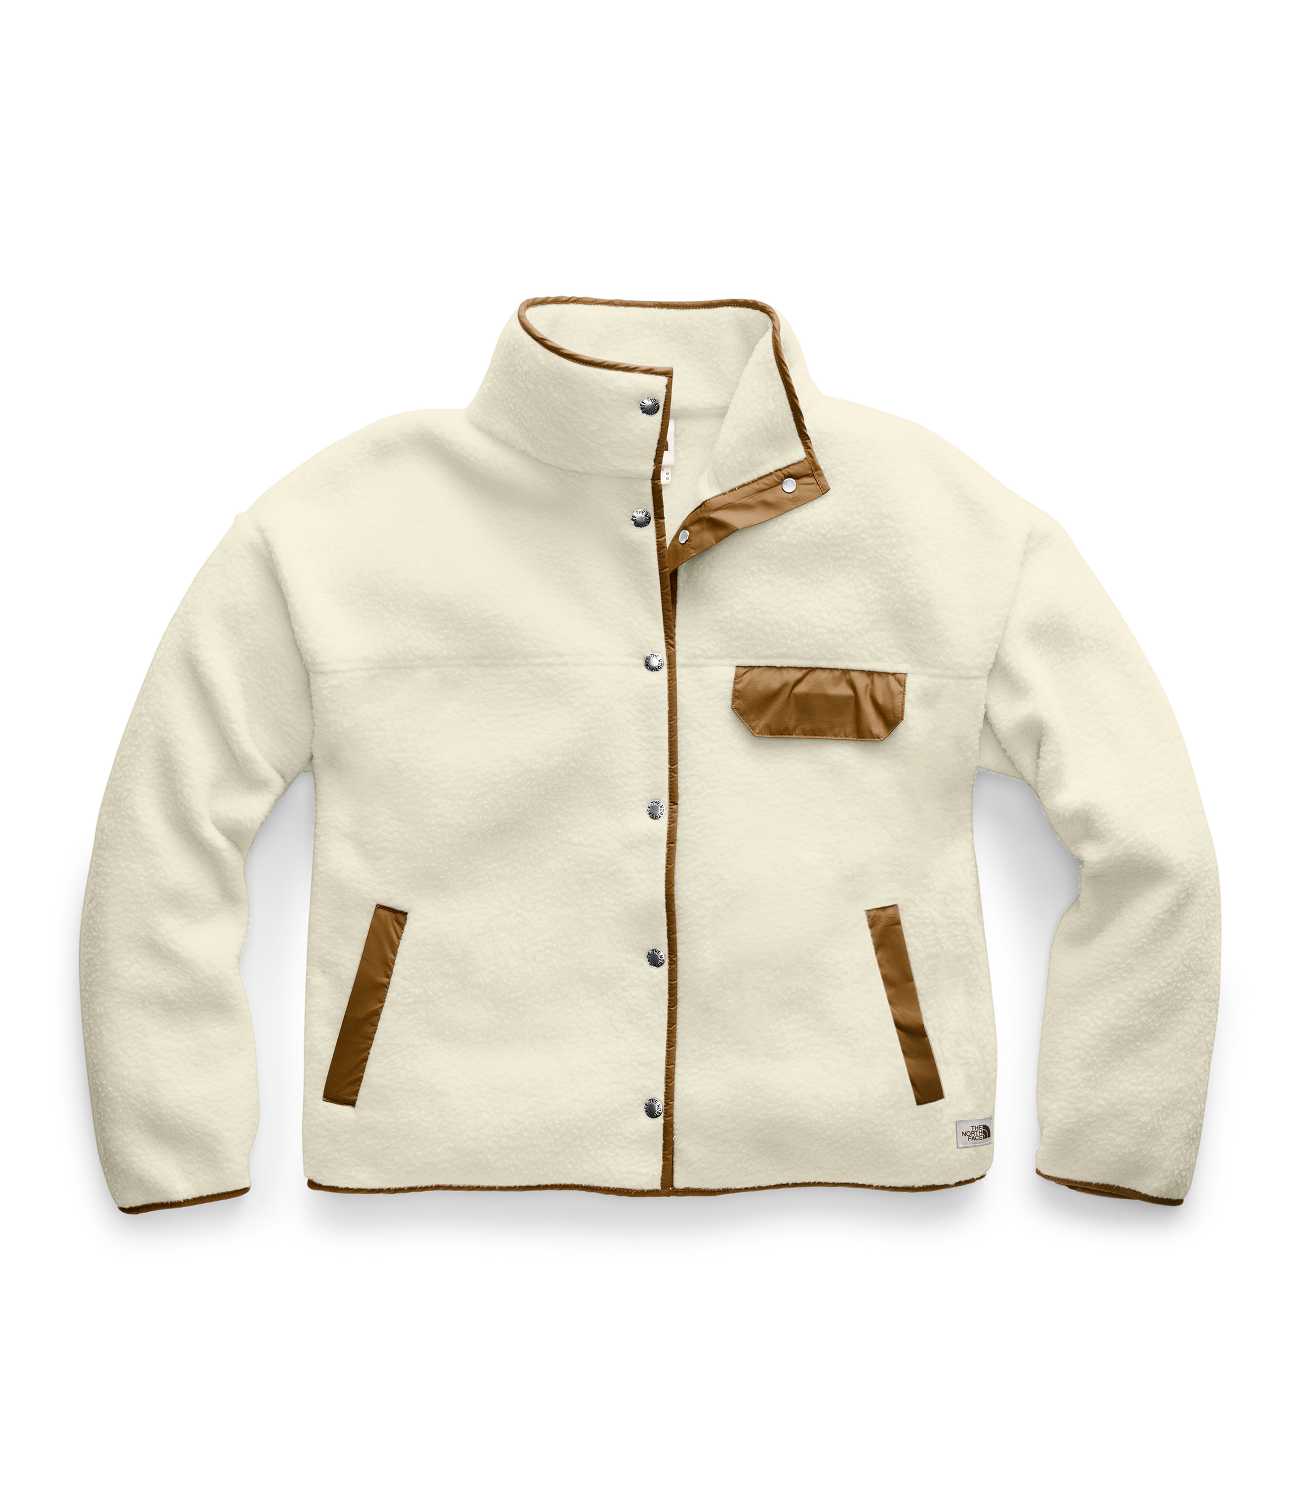 Cragmont Fleece Jacket For Sale - William Jacket